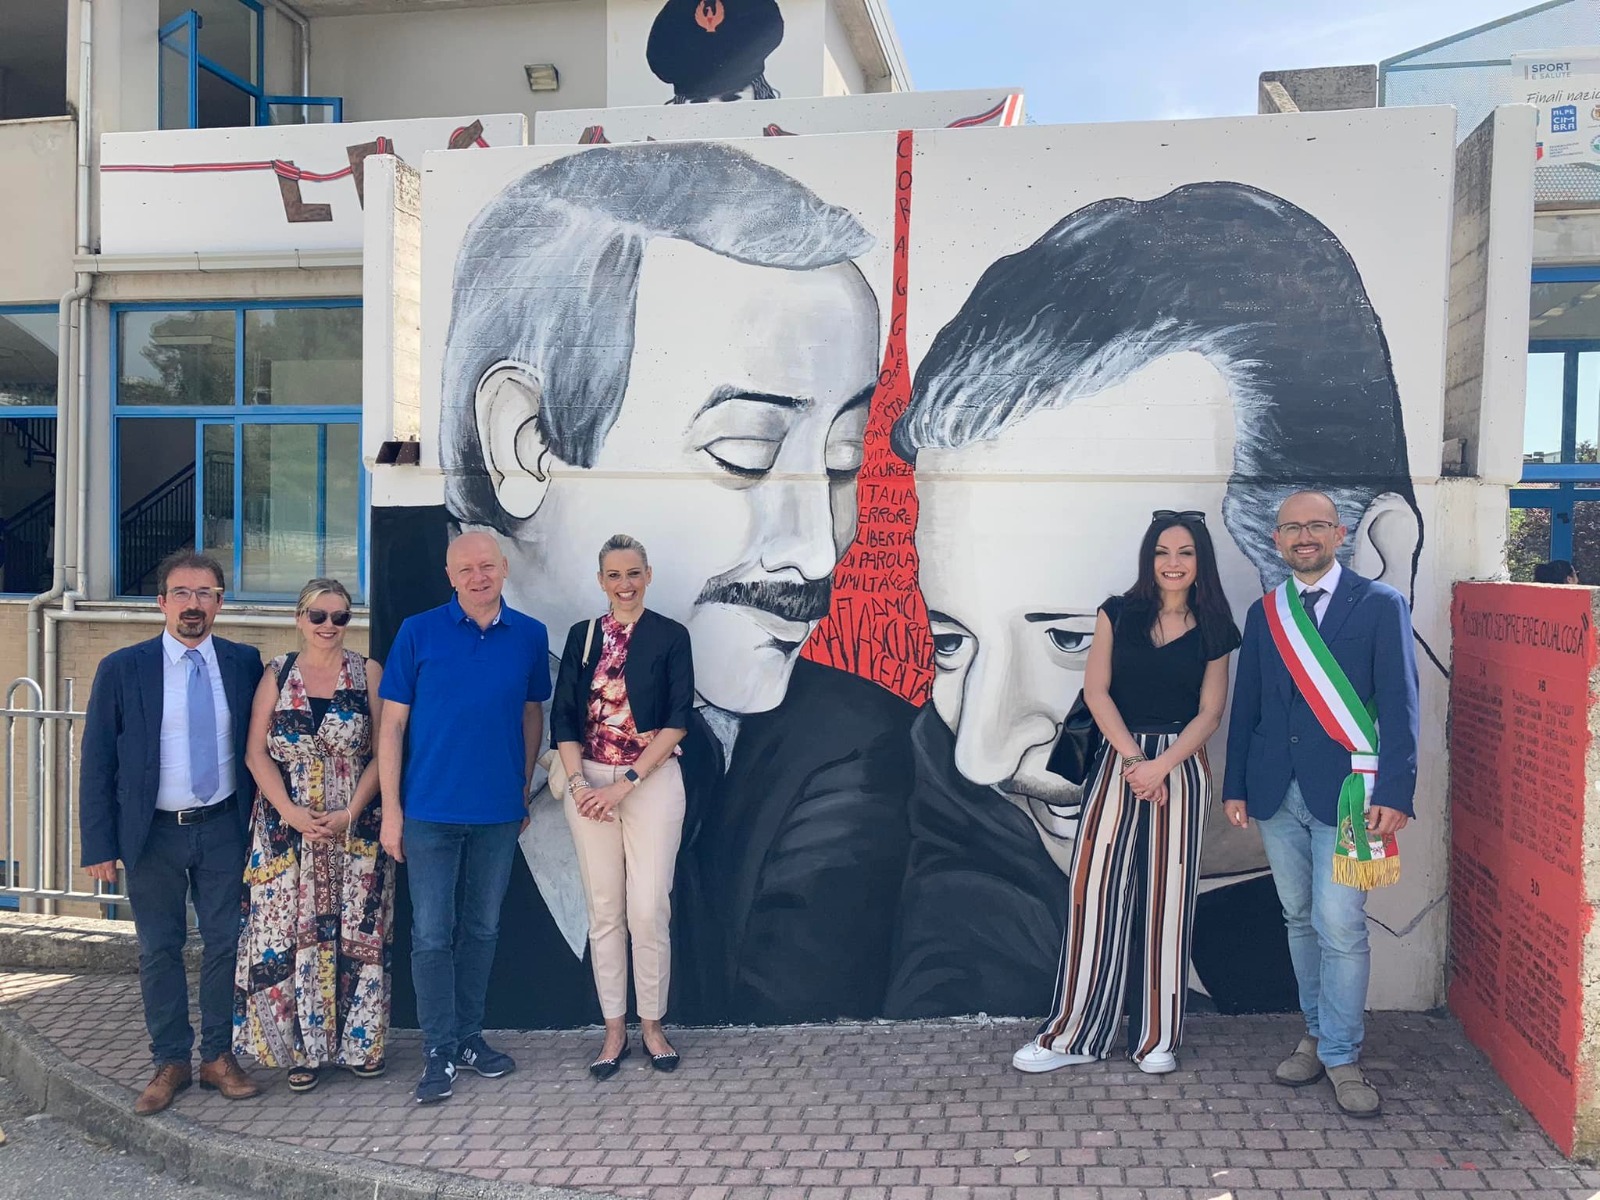 Folignano – Inaugurato a Villa Pigna il murales della legalità